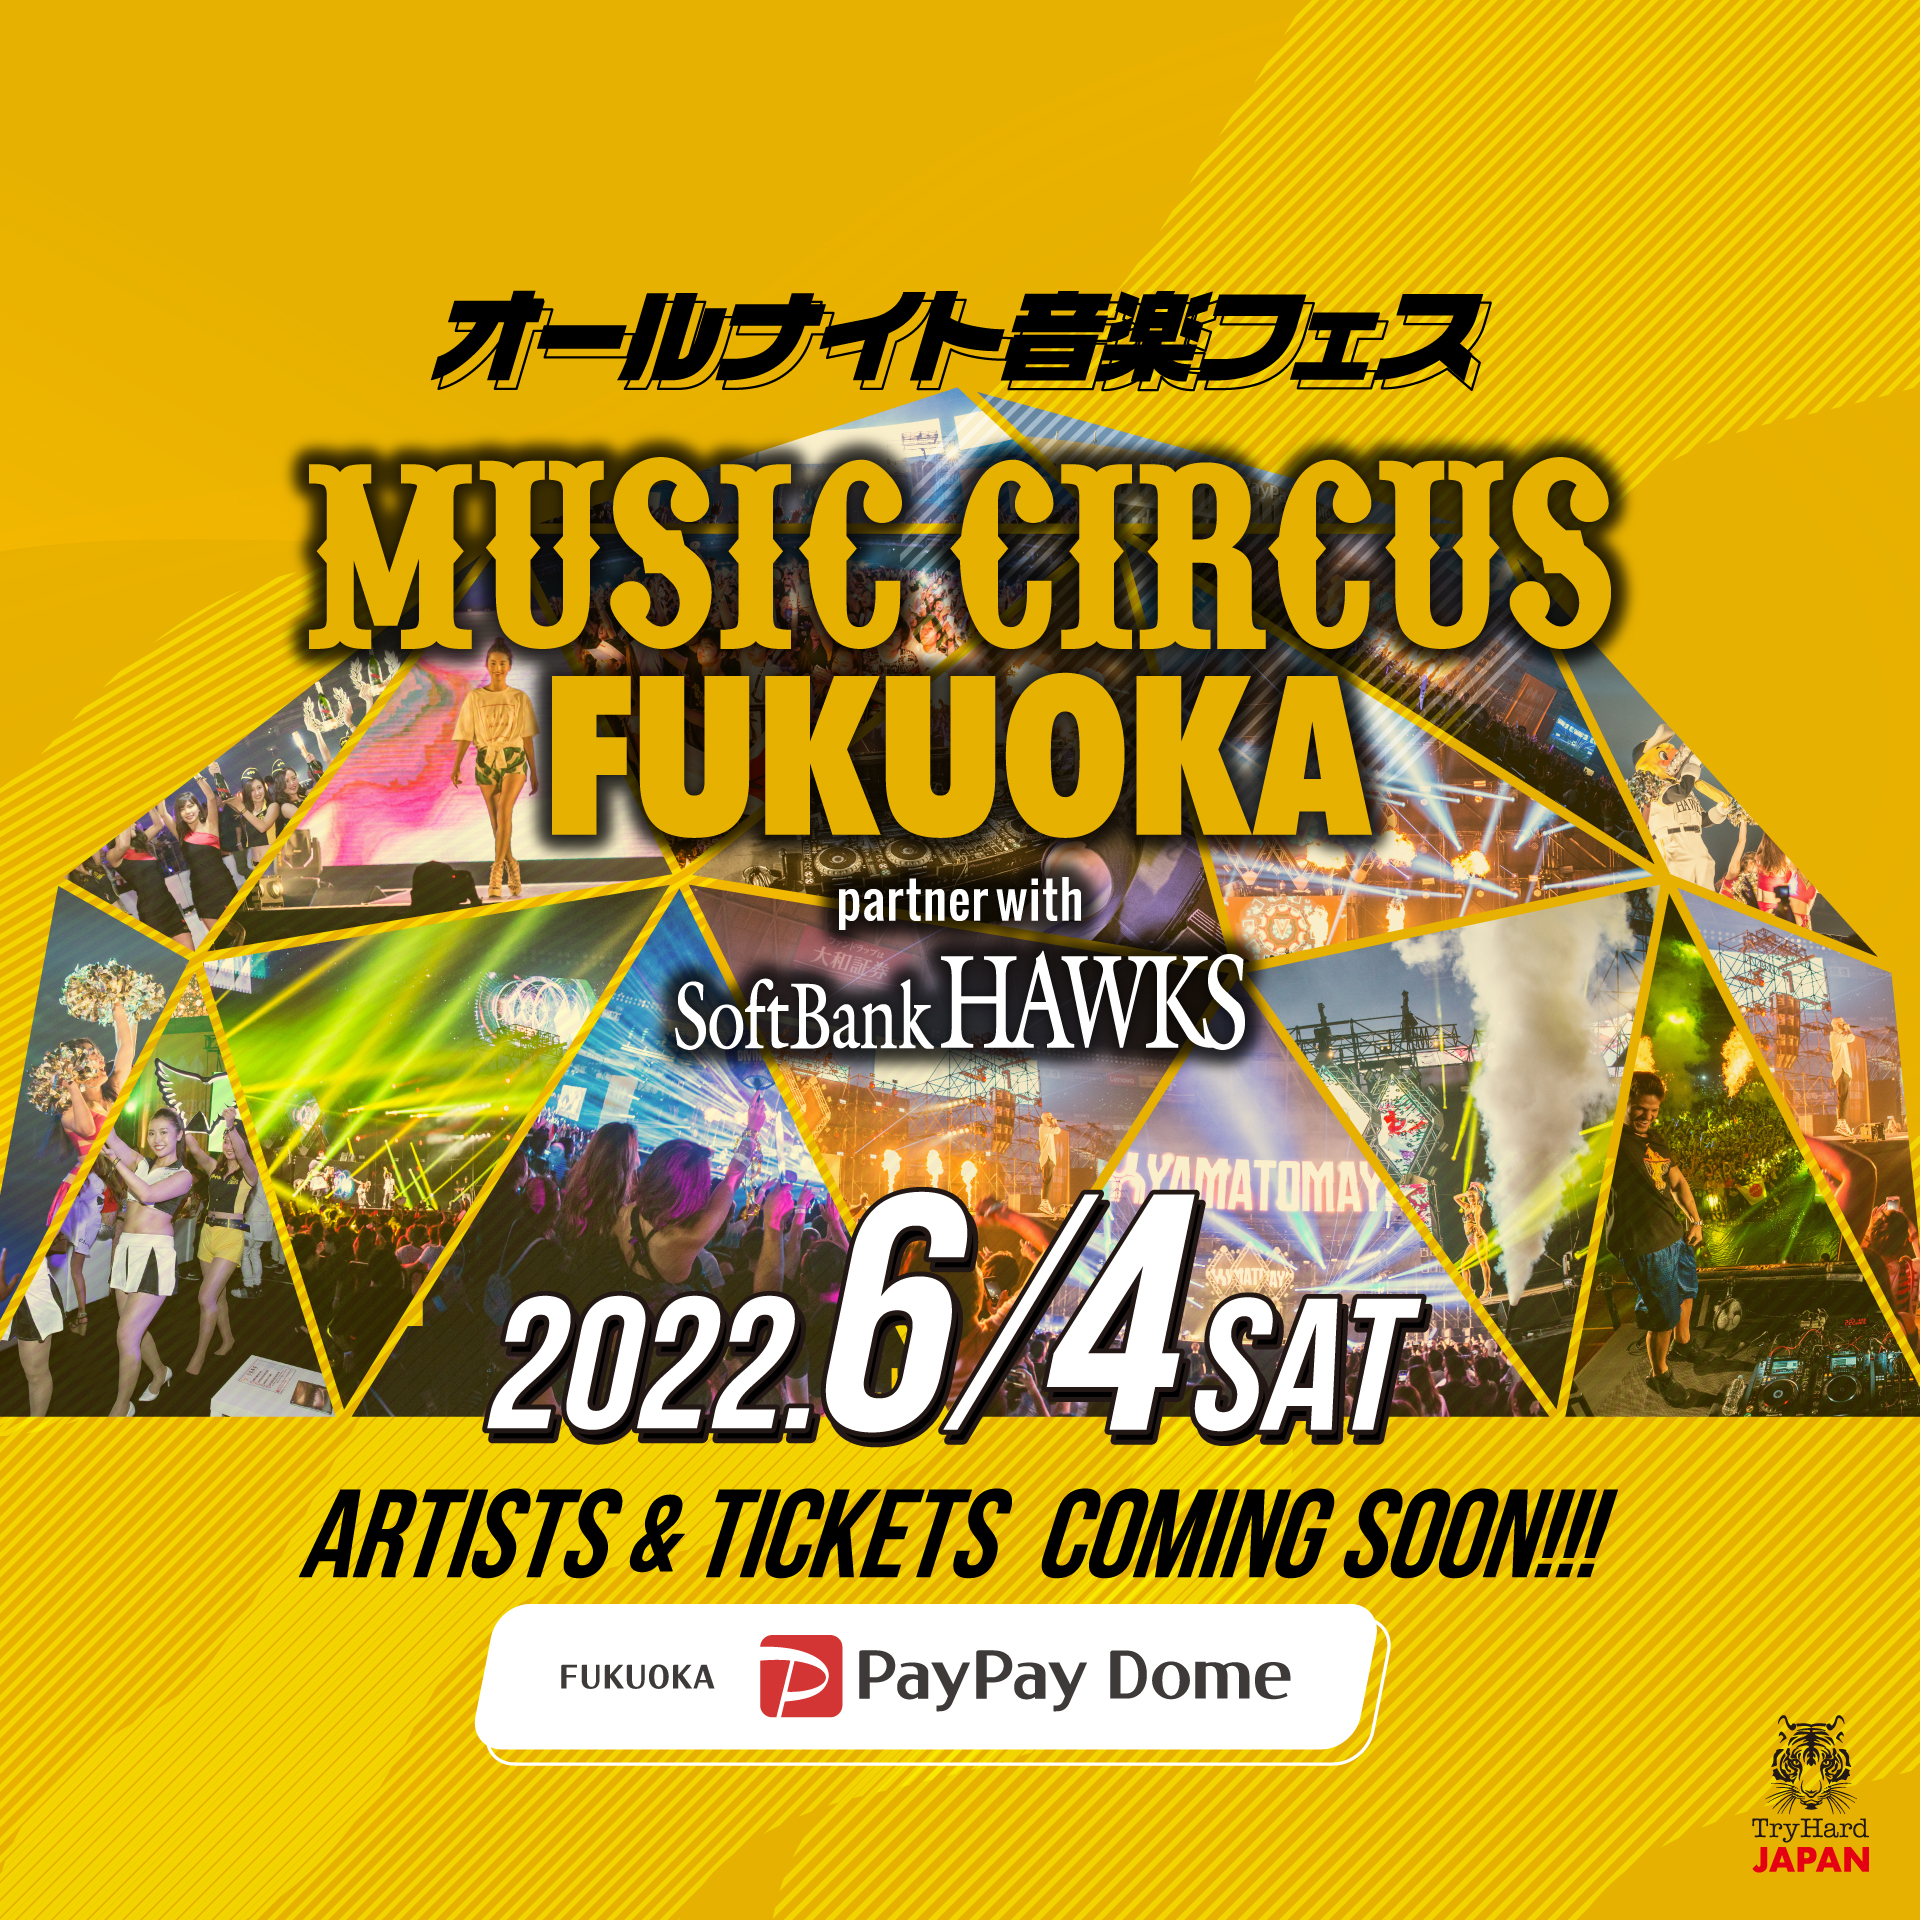 福岡paypayドーム オールナイト音楽フェスmusic Circus Fukuoka Partner With Softbankhawks２年連続中止を経て 6月4日開催へ 株式会社tryhard Japanのプレスリリース